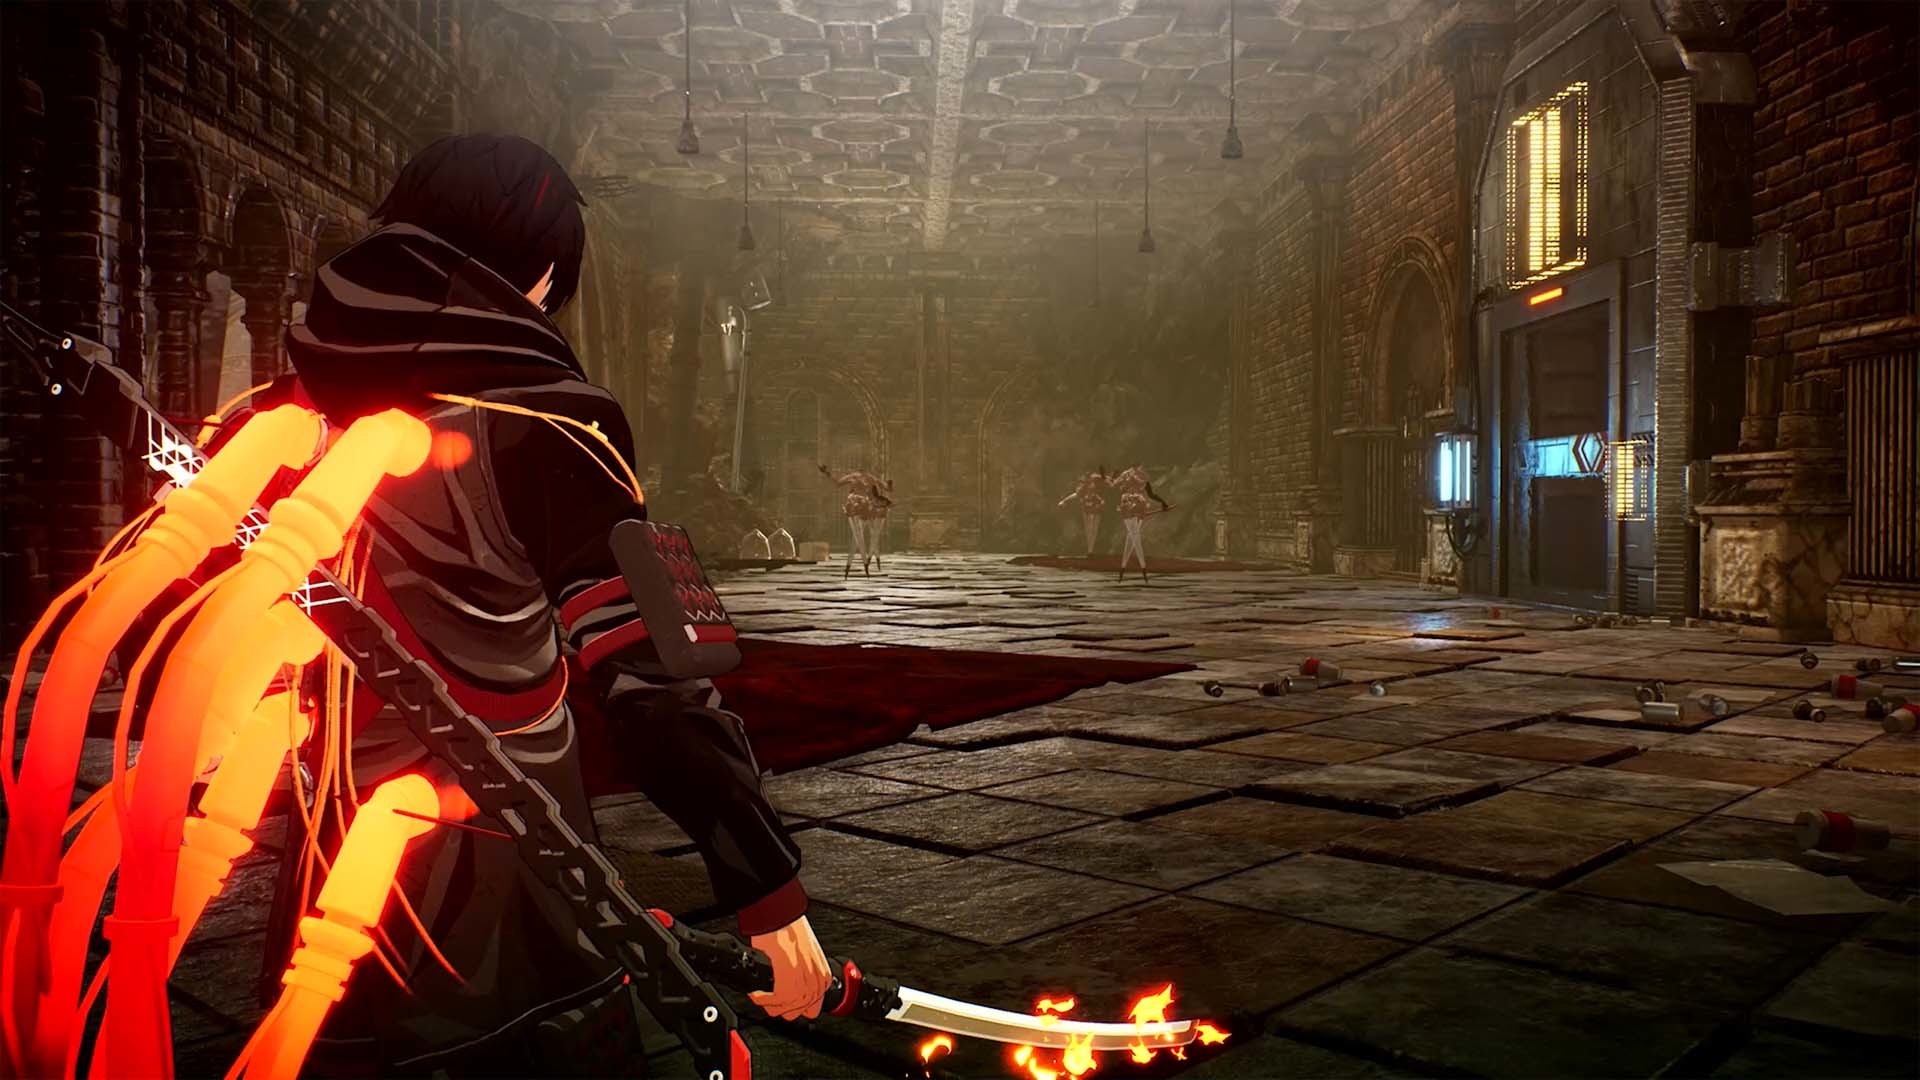 Scarlet Nexus - Full Gameplay Walkthrough [HD 1080P] 